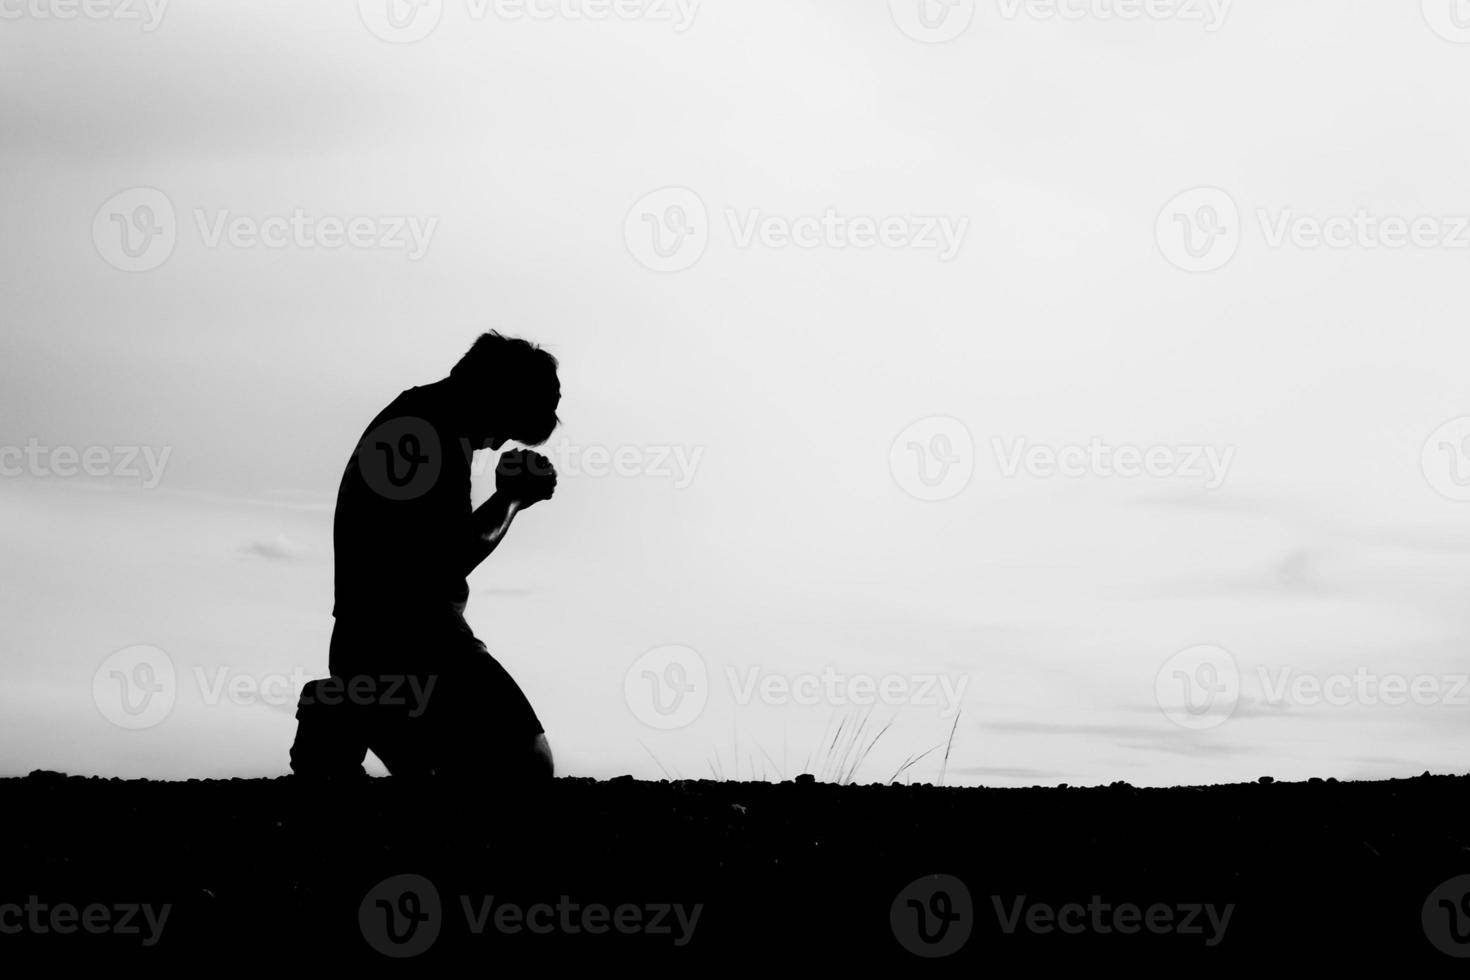 silhouetten van mannen zitten en bidden voor zegeningen. hoop concept foto